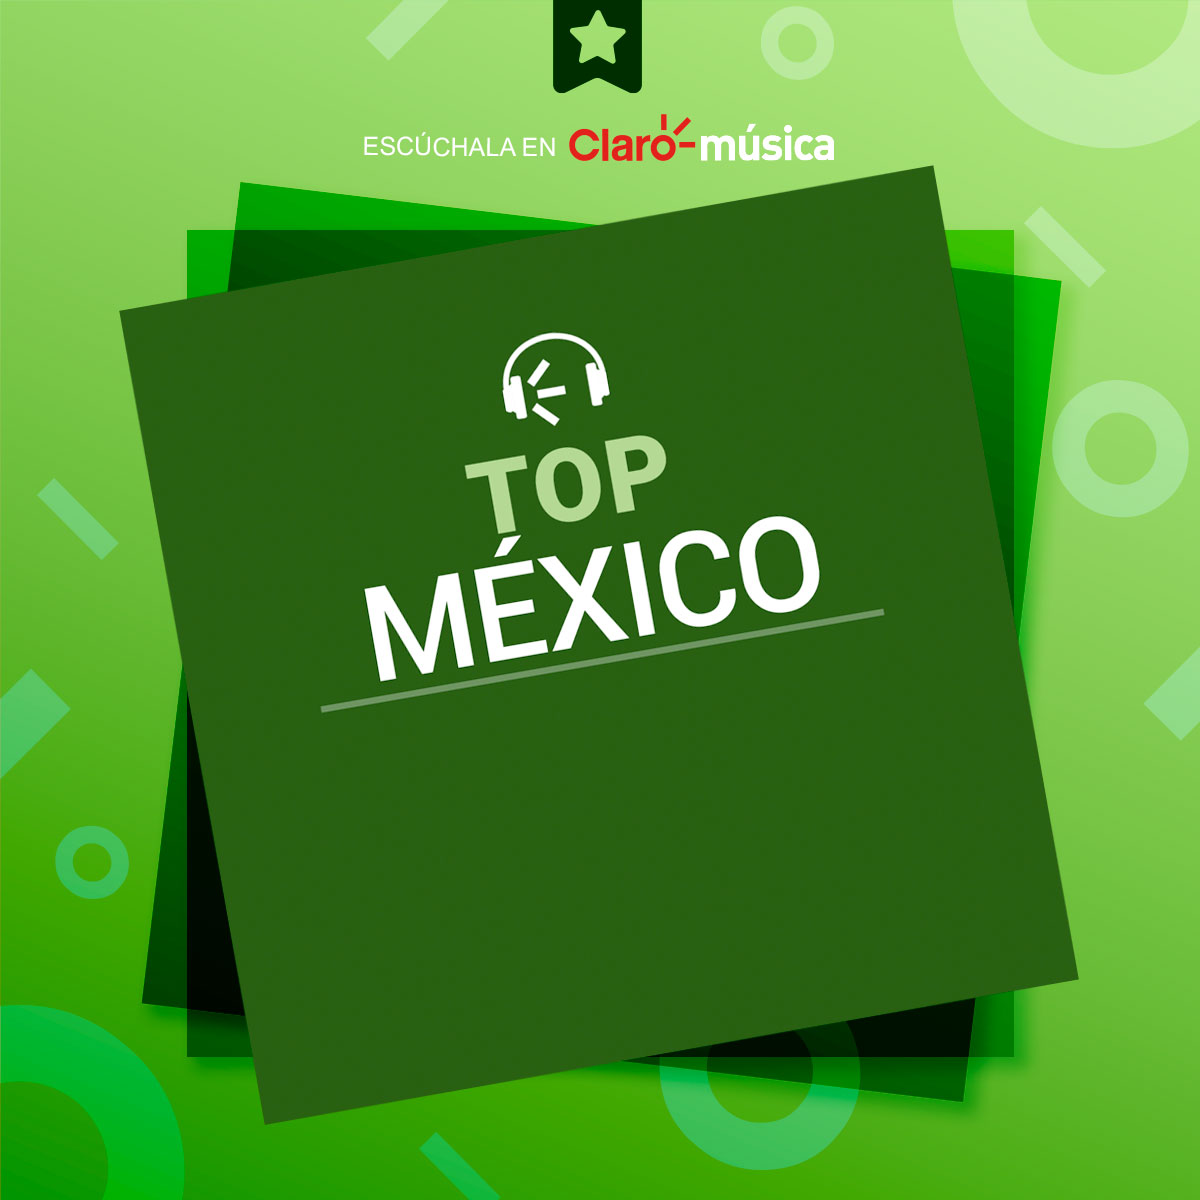 😎 ¡Aquí está lo más escuchado en #México!🔥 Checa nuestro #Top y disfruta de la música que encabeza los éxitos de hoy. 🇲🇽🎶 ow.ly/LGuE50QsicM #Claromúsica #TopMéxico